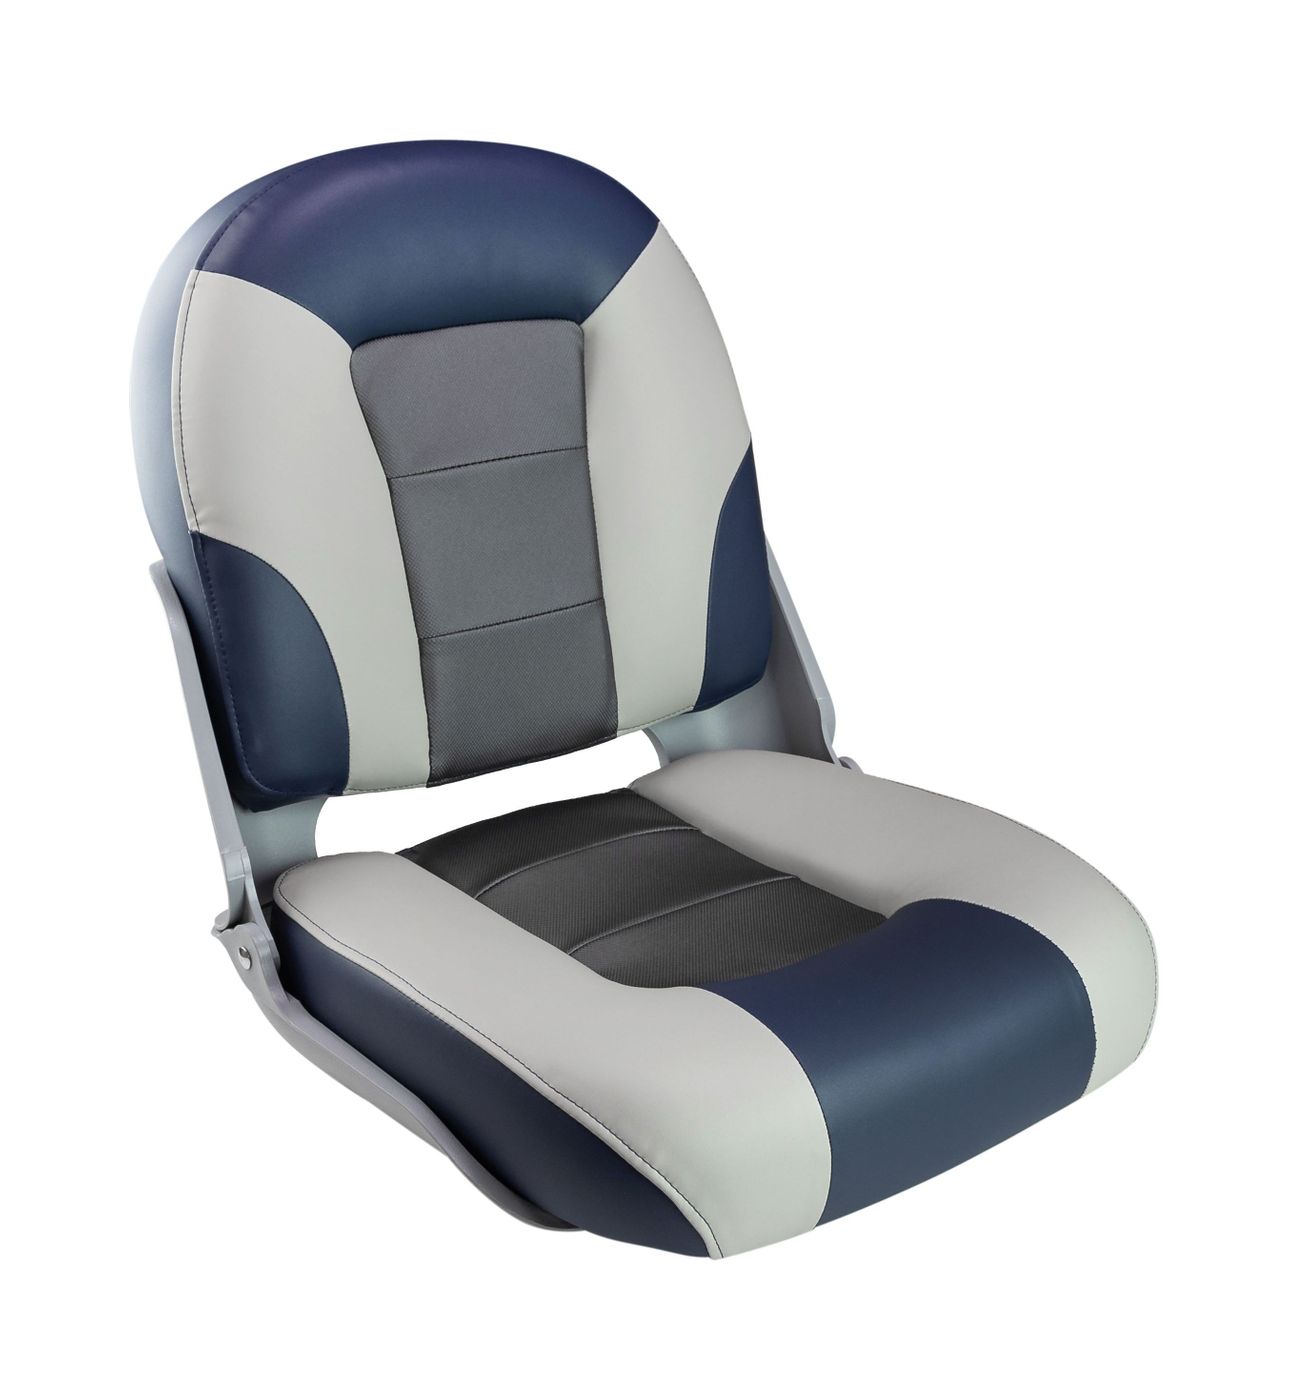 Кресло SKIPPER PREMIUM с высокой спинкой, синий/серый/темно-серый 1061069 беспроводное зарядное устройство 3 в 1 canyon ws 303 с поддержкой qi до 15вт темно серый cns wcs303dg